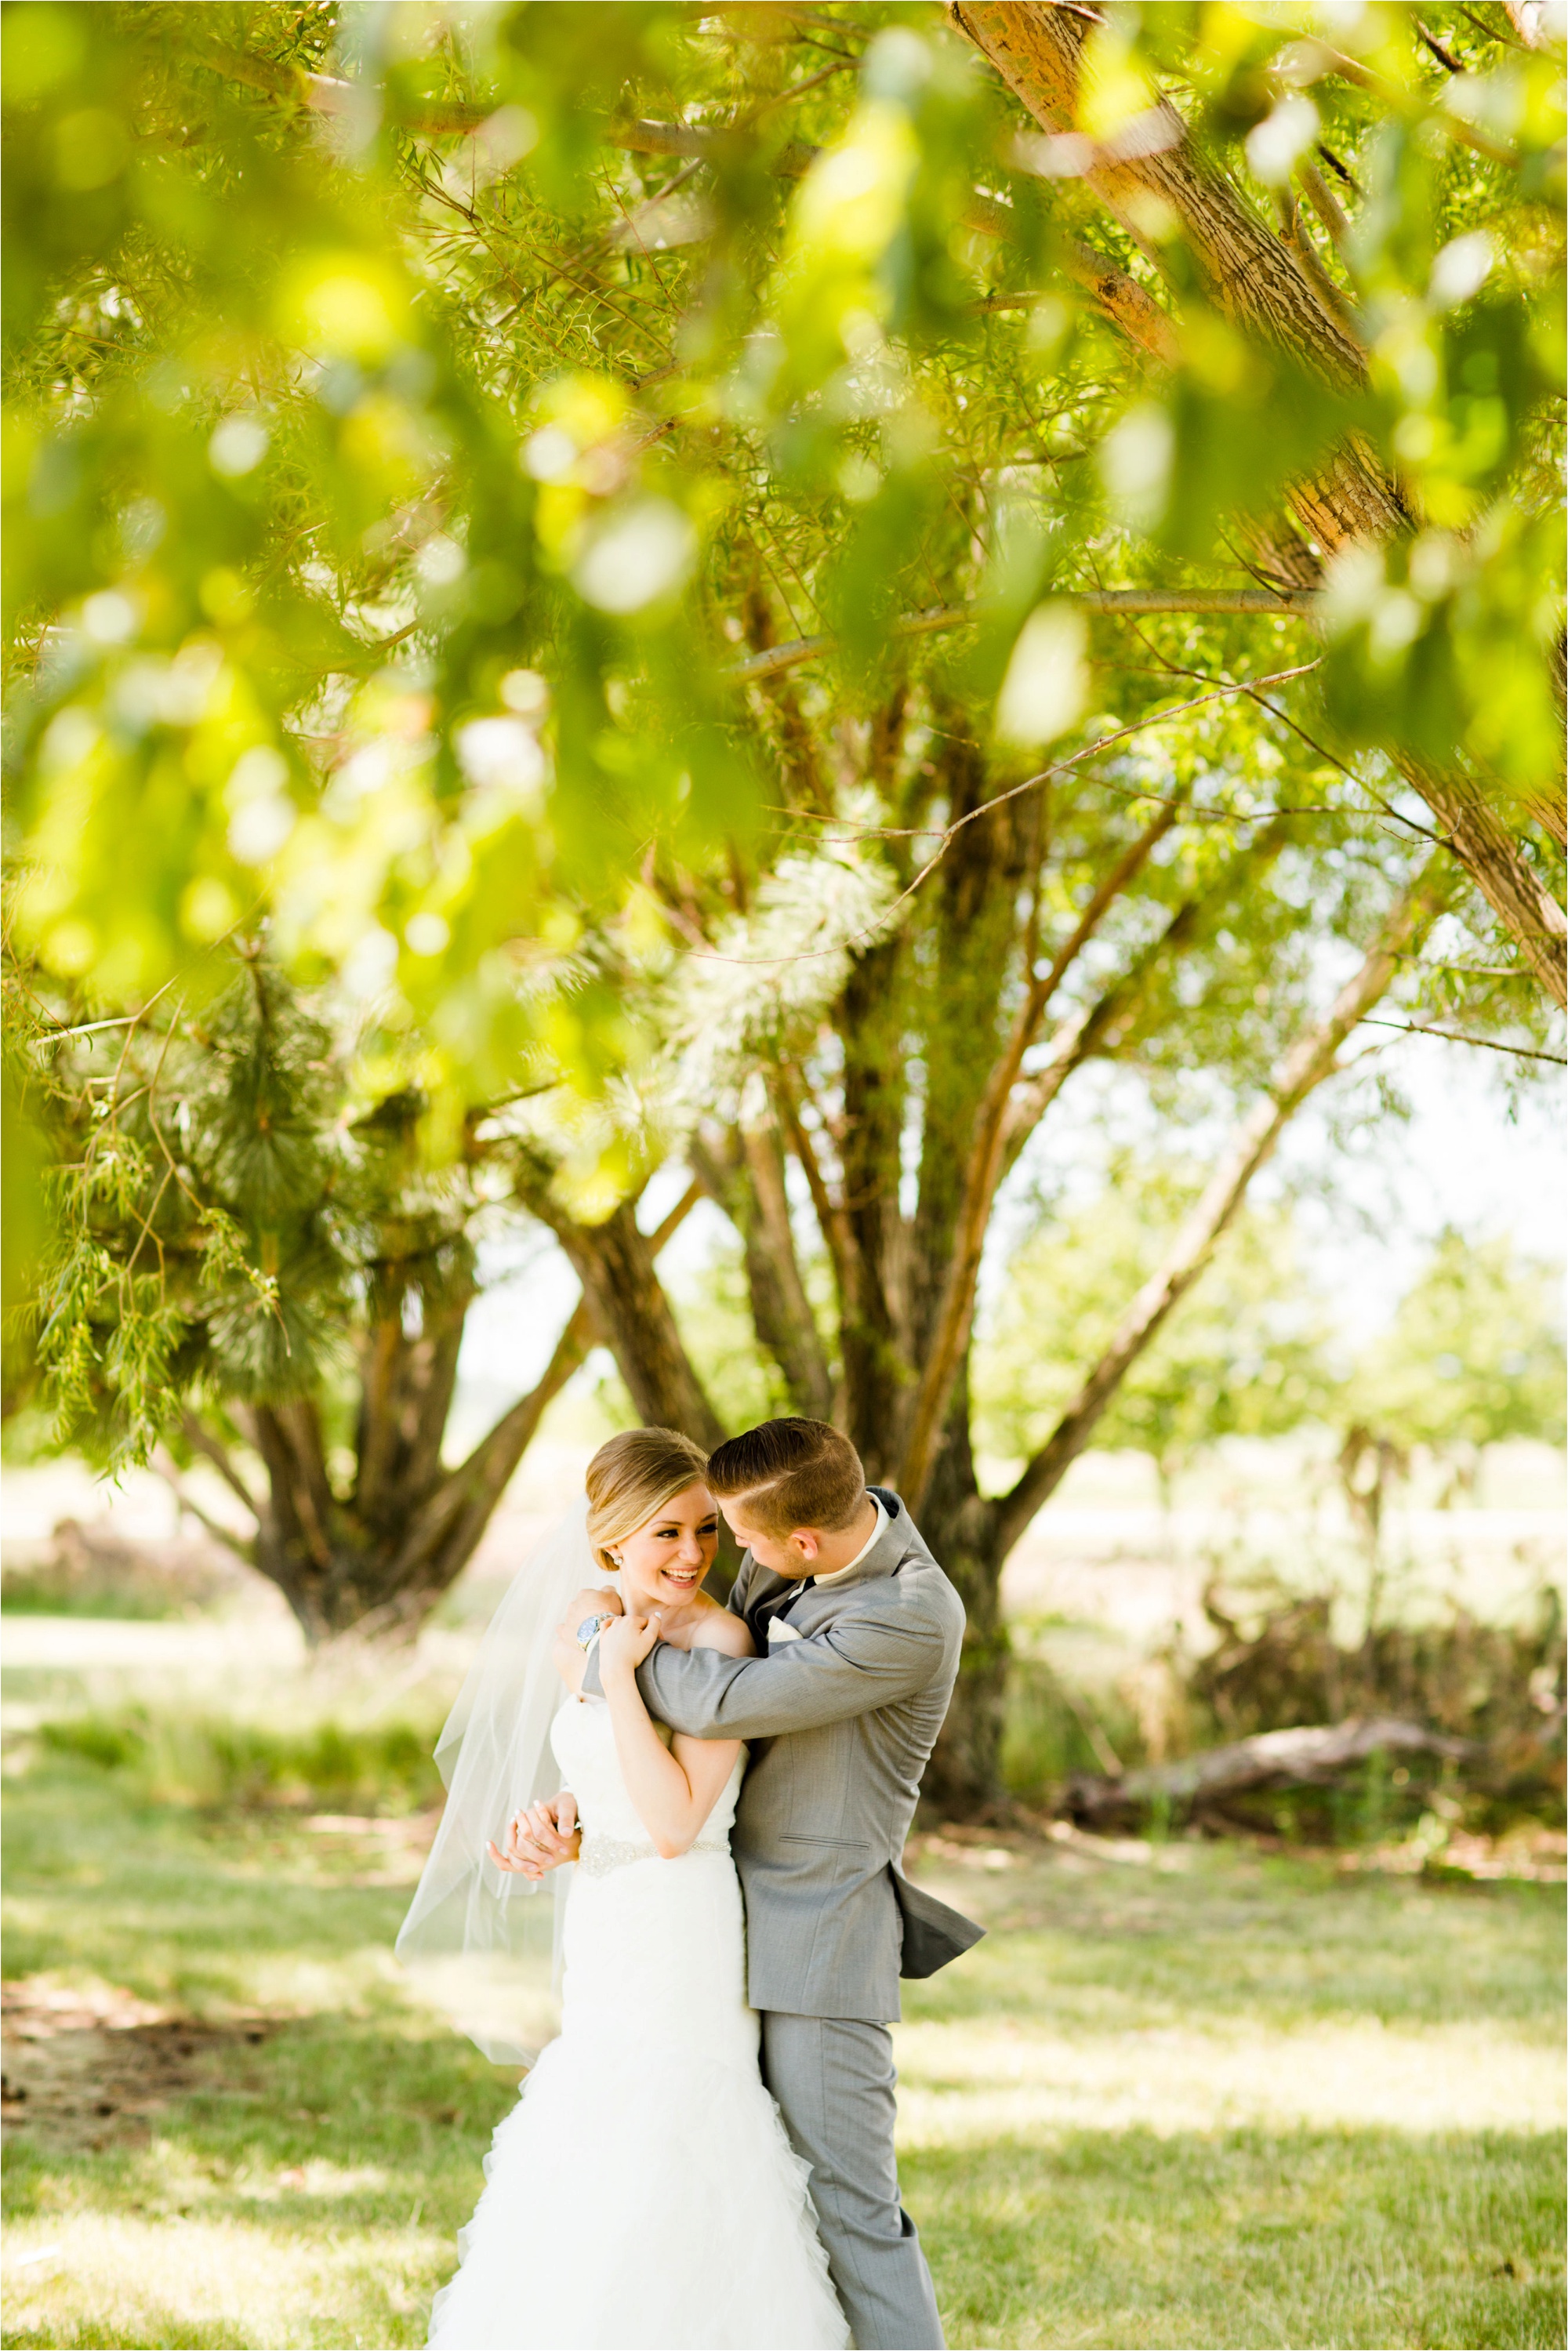 Caitlin and Luke Photography, Bloomington Normal Wedding Photographers, Illinois Wedding Photographers, Illinois Husband and Wife Wedding Photography Team_0284.jpg